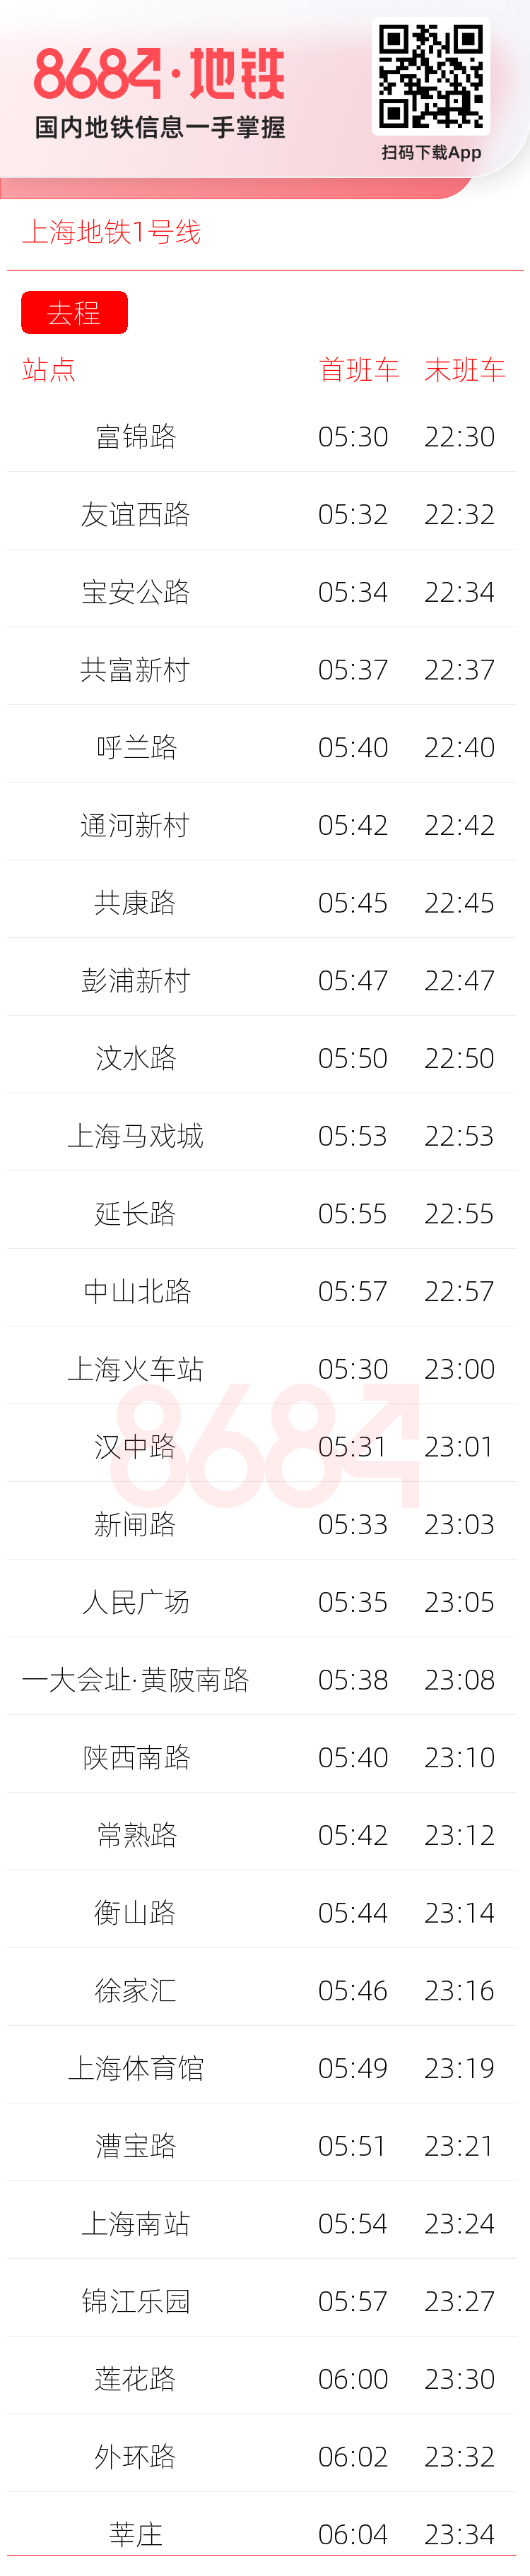 上海地铁1号线运营时间表